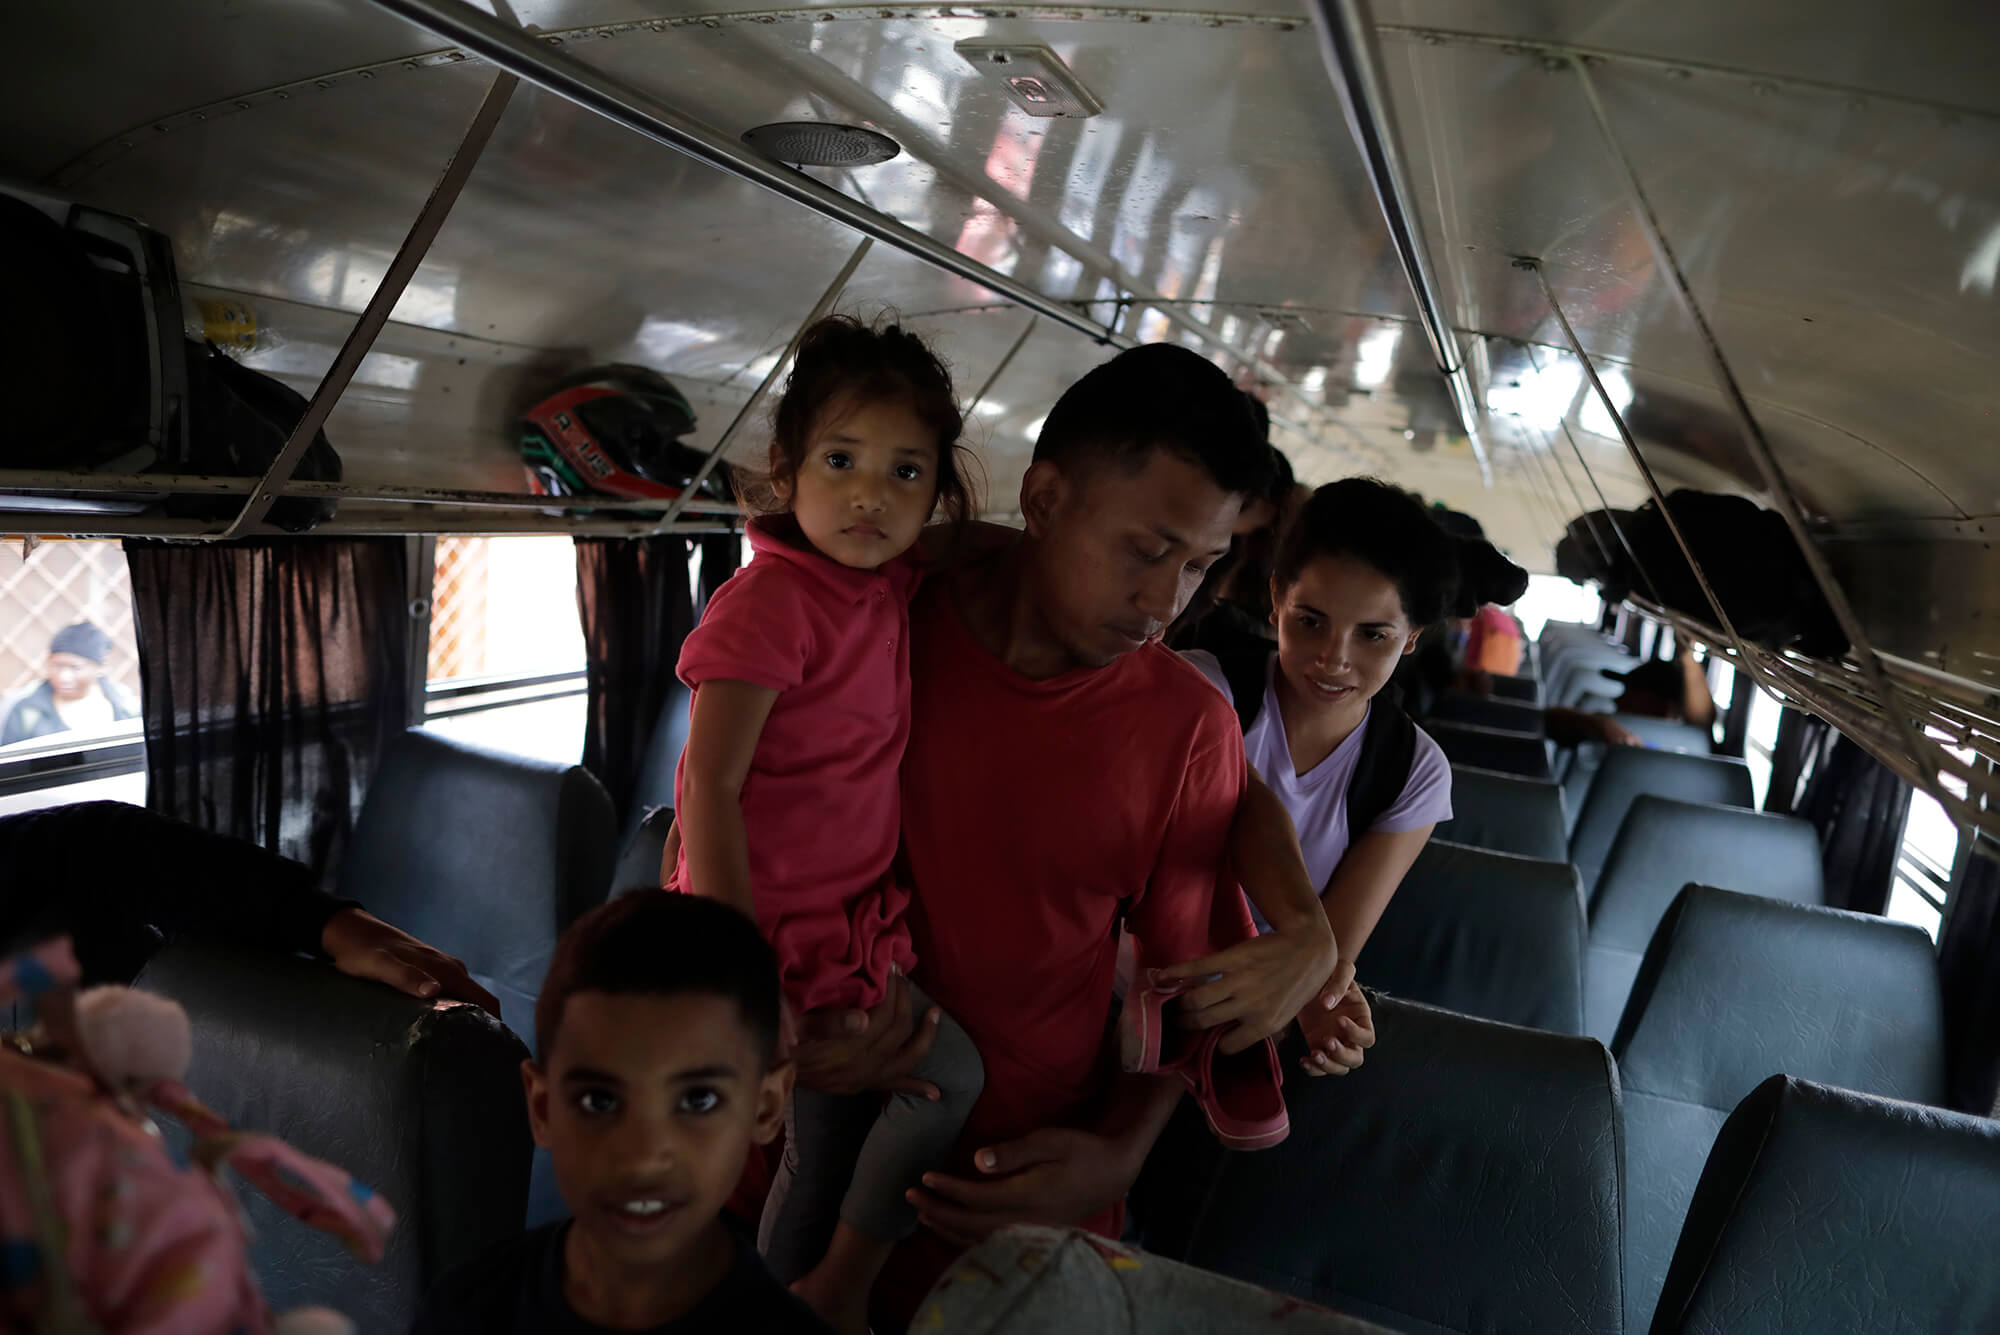 Jesús Morán y su familia bajan del bus que los llevó a Danlí, donde toman un respiro para seguir su camino luego de obtener su salvoconducto. Danlí, Honduras  28 abril 2022 Foto CC/ Jorge Cabrera